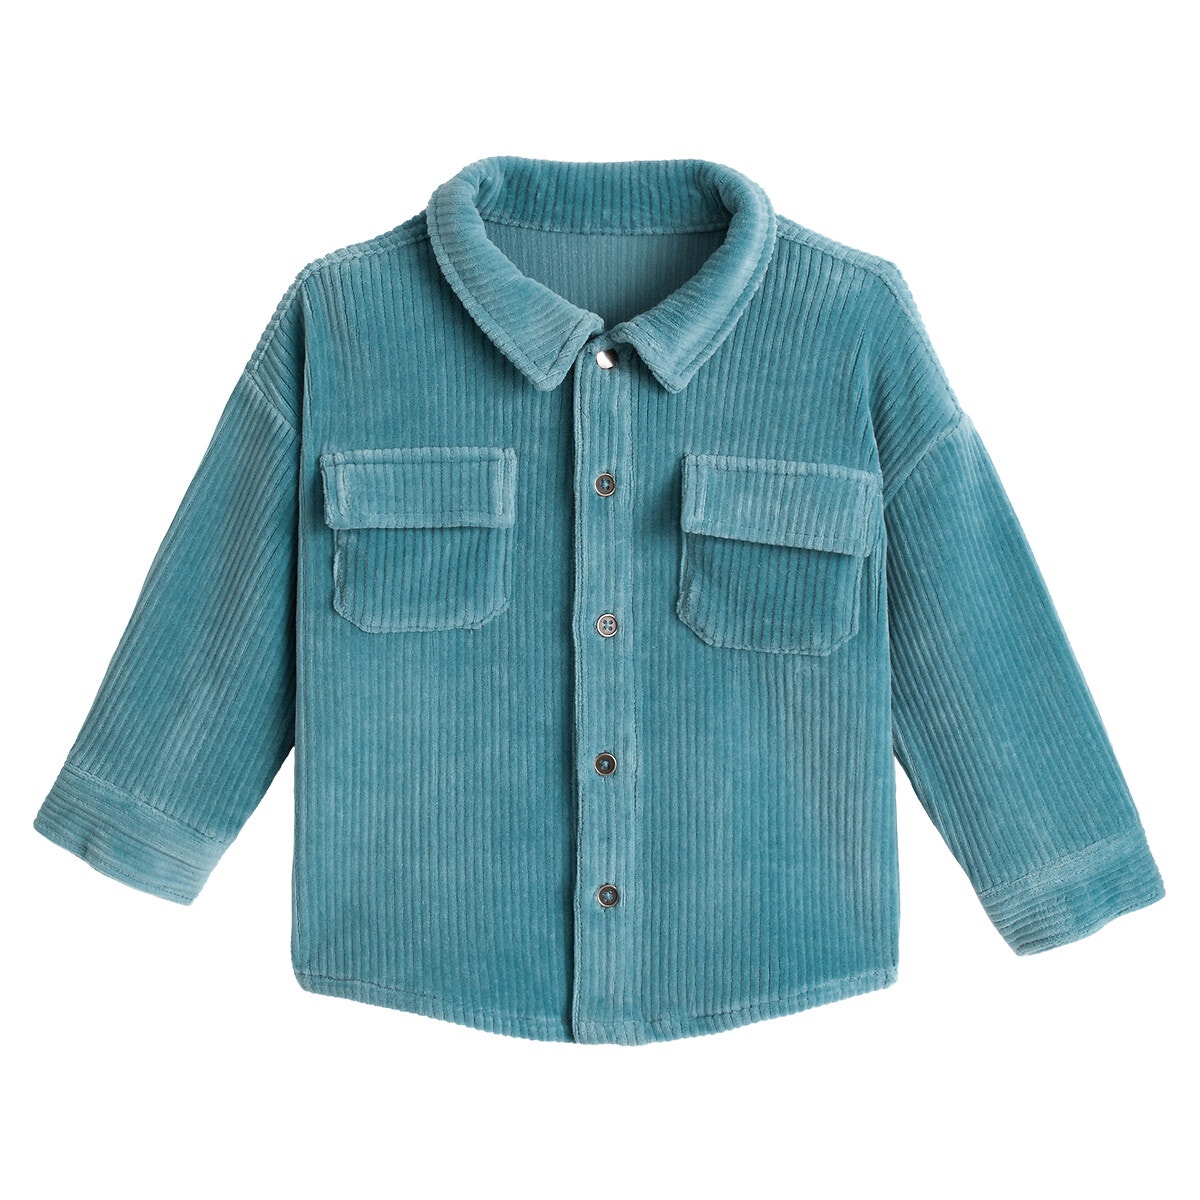 ΠΑΙΔΙ | Μπλούζες & Πουκάμισα | Πουκάμισα Κοτλέ πουκάμισο, 3 μηνών - 3 ετών